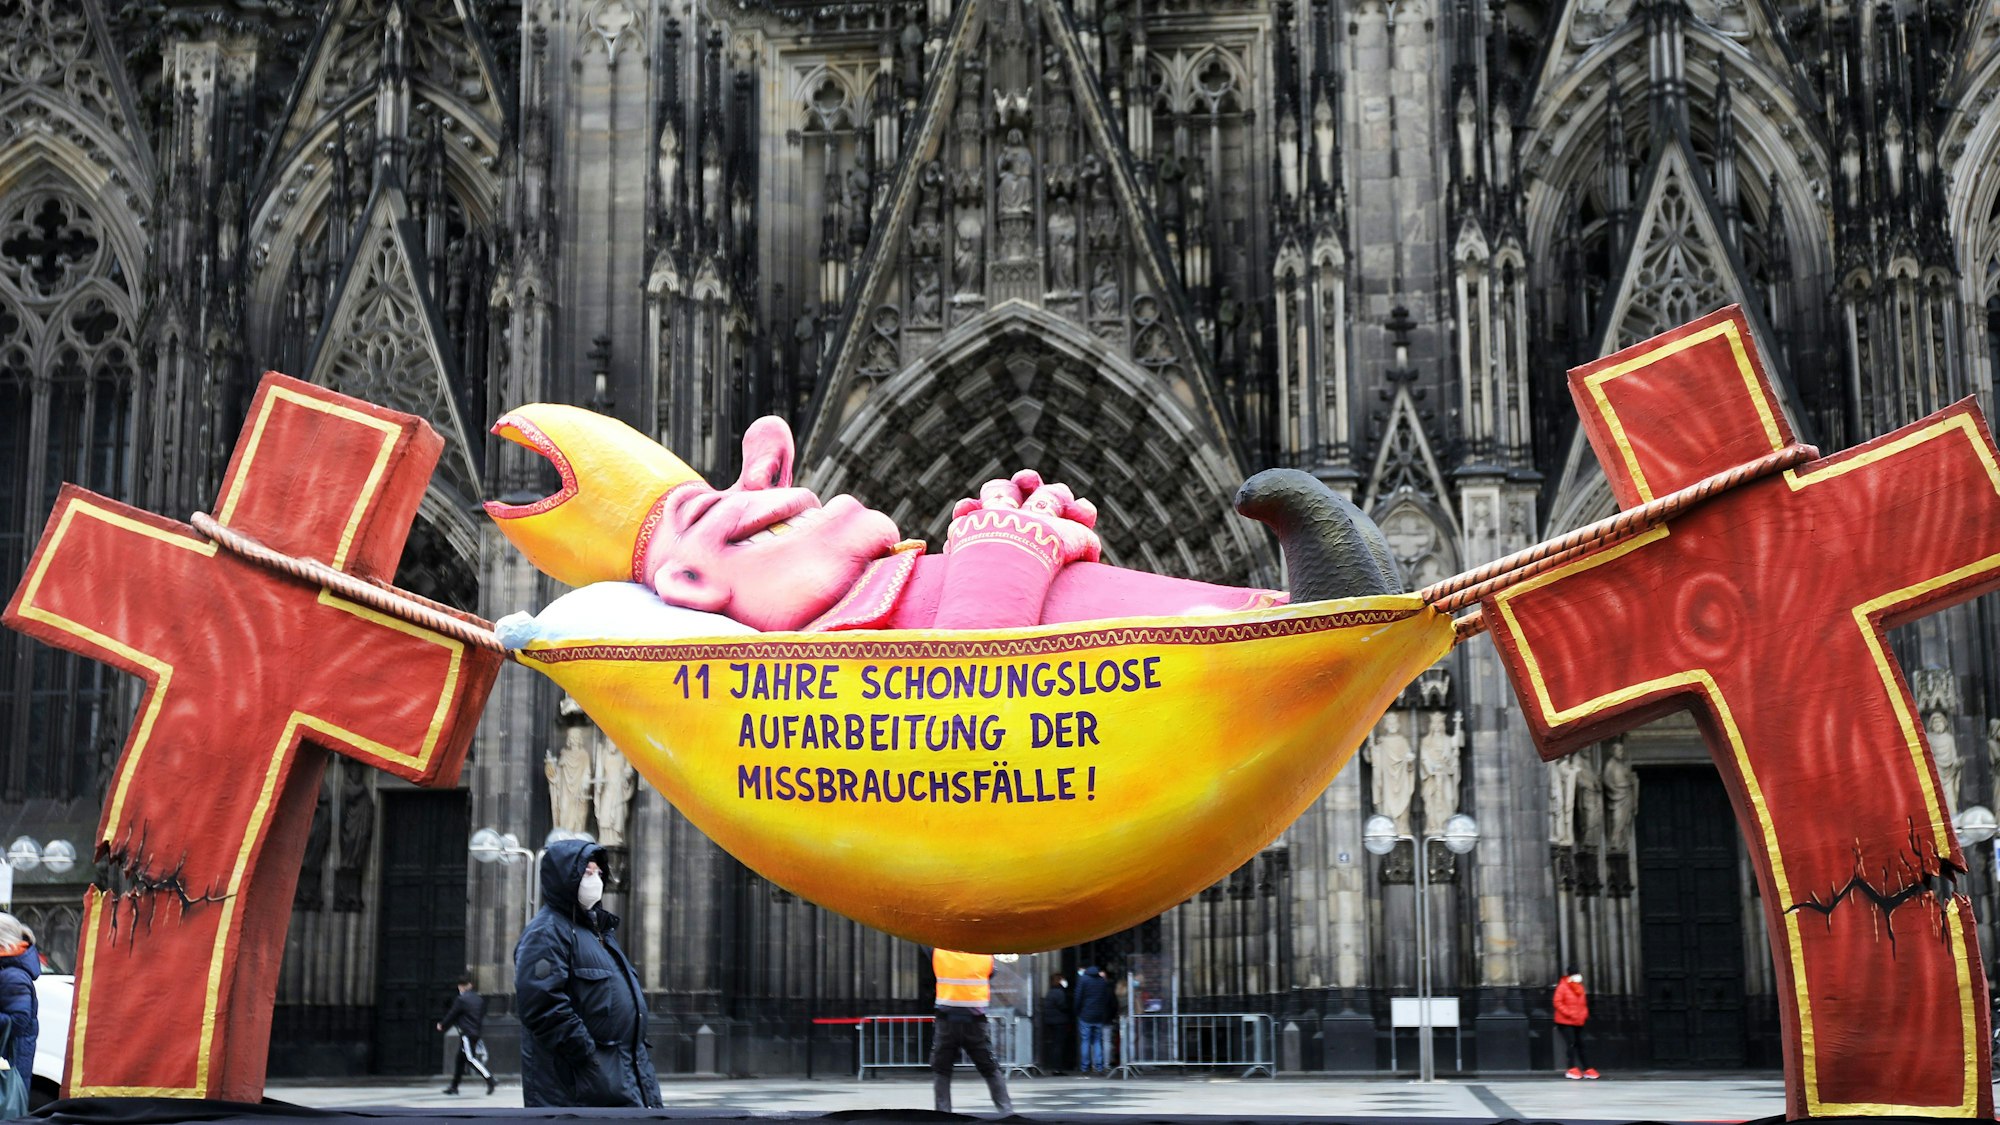 Mit einer satirischen Plastik, aufgestellt vor dem Kölner Dom, wirft der Künstler Jacques Tilly der katholischen Kirche mangelnde Bereitschaft zur Aufarbeitung des Missbrauchsskandals vor.